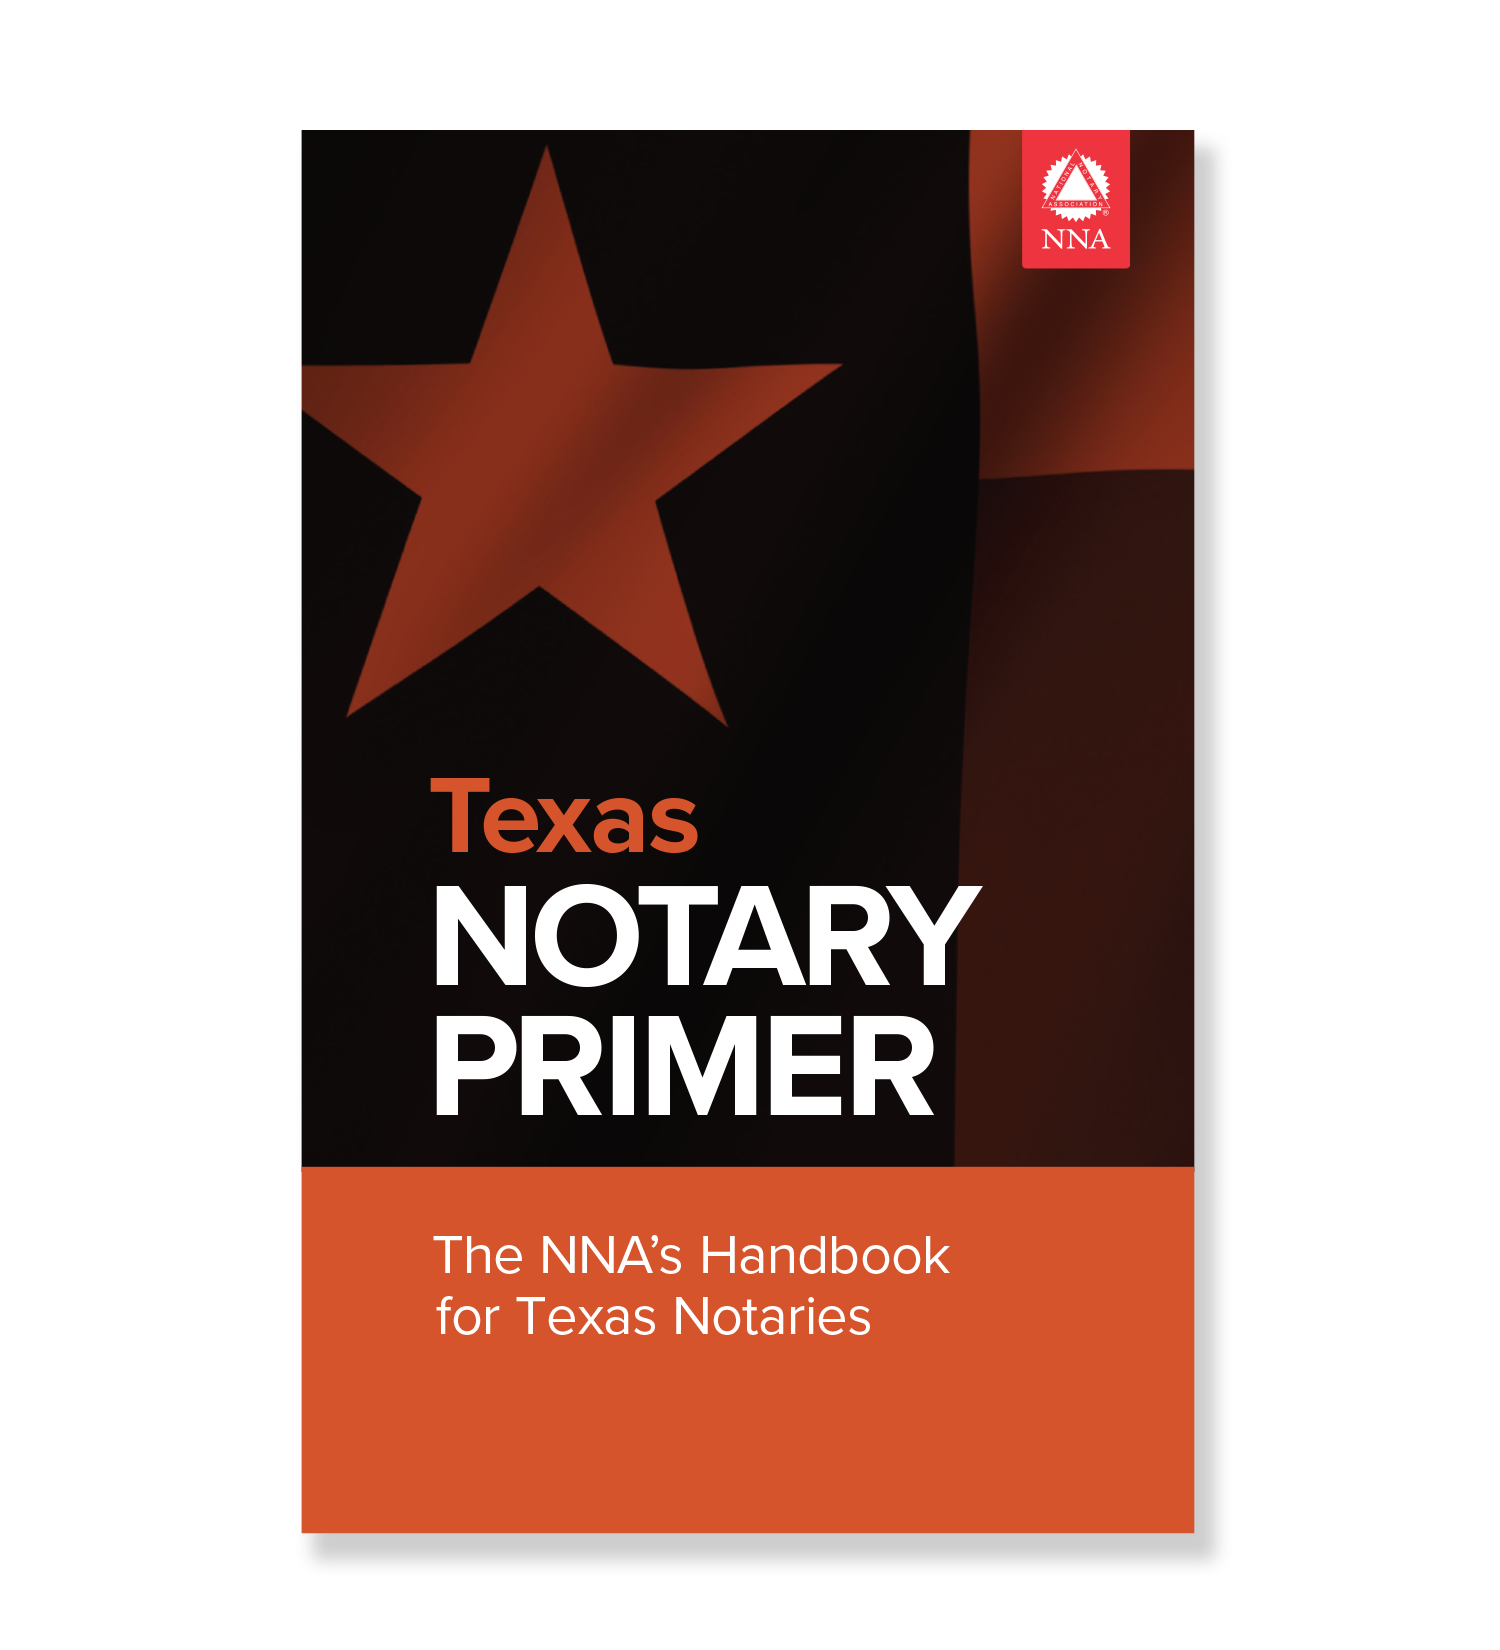 Texas Notary Primer